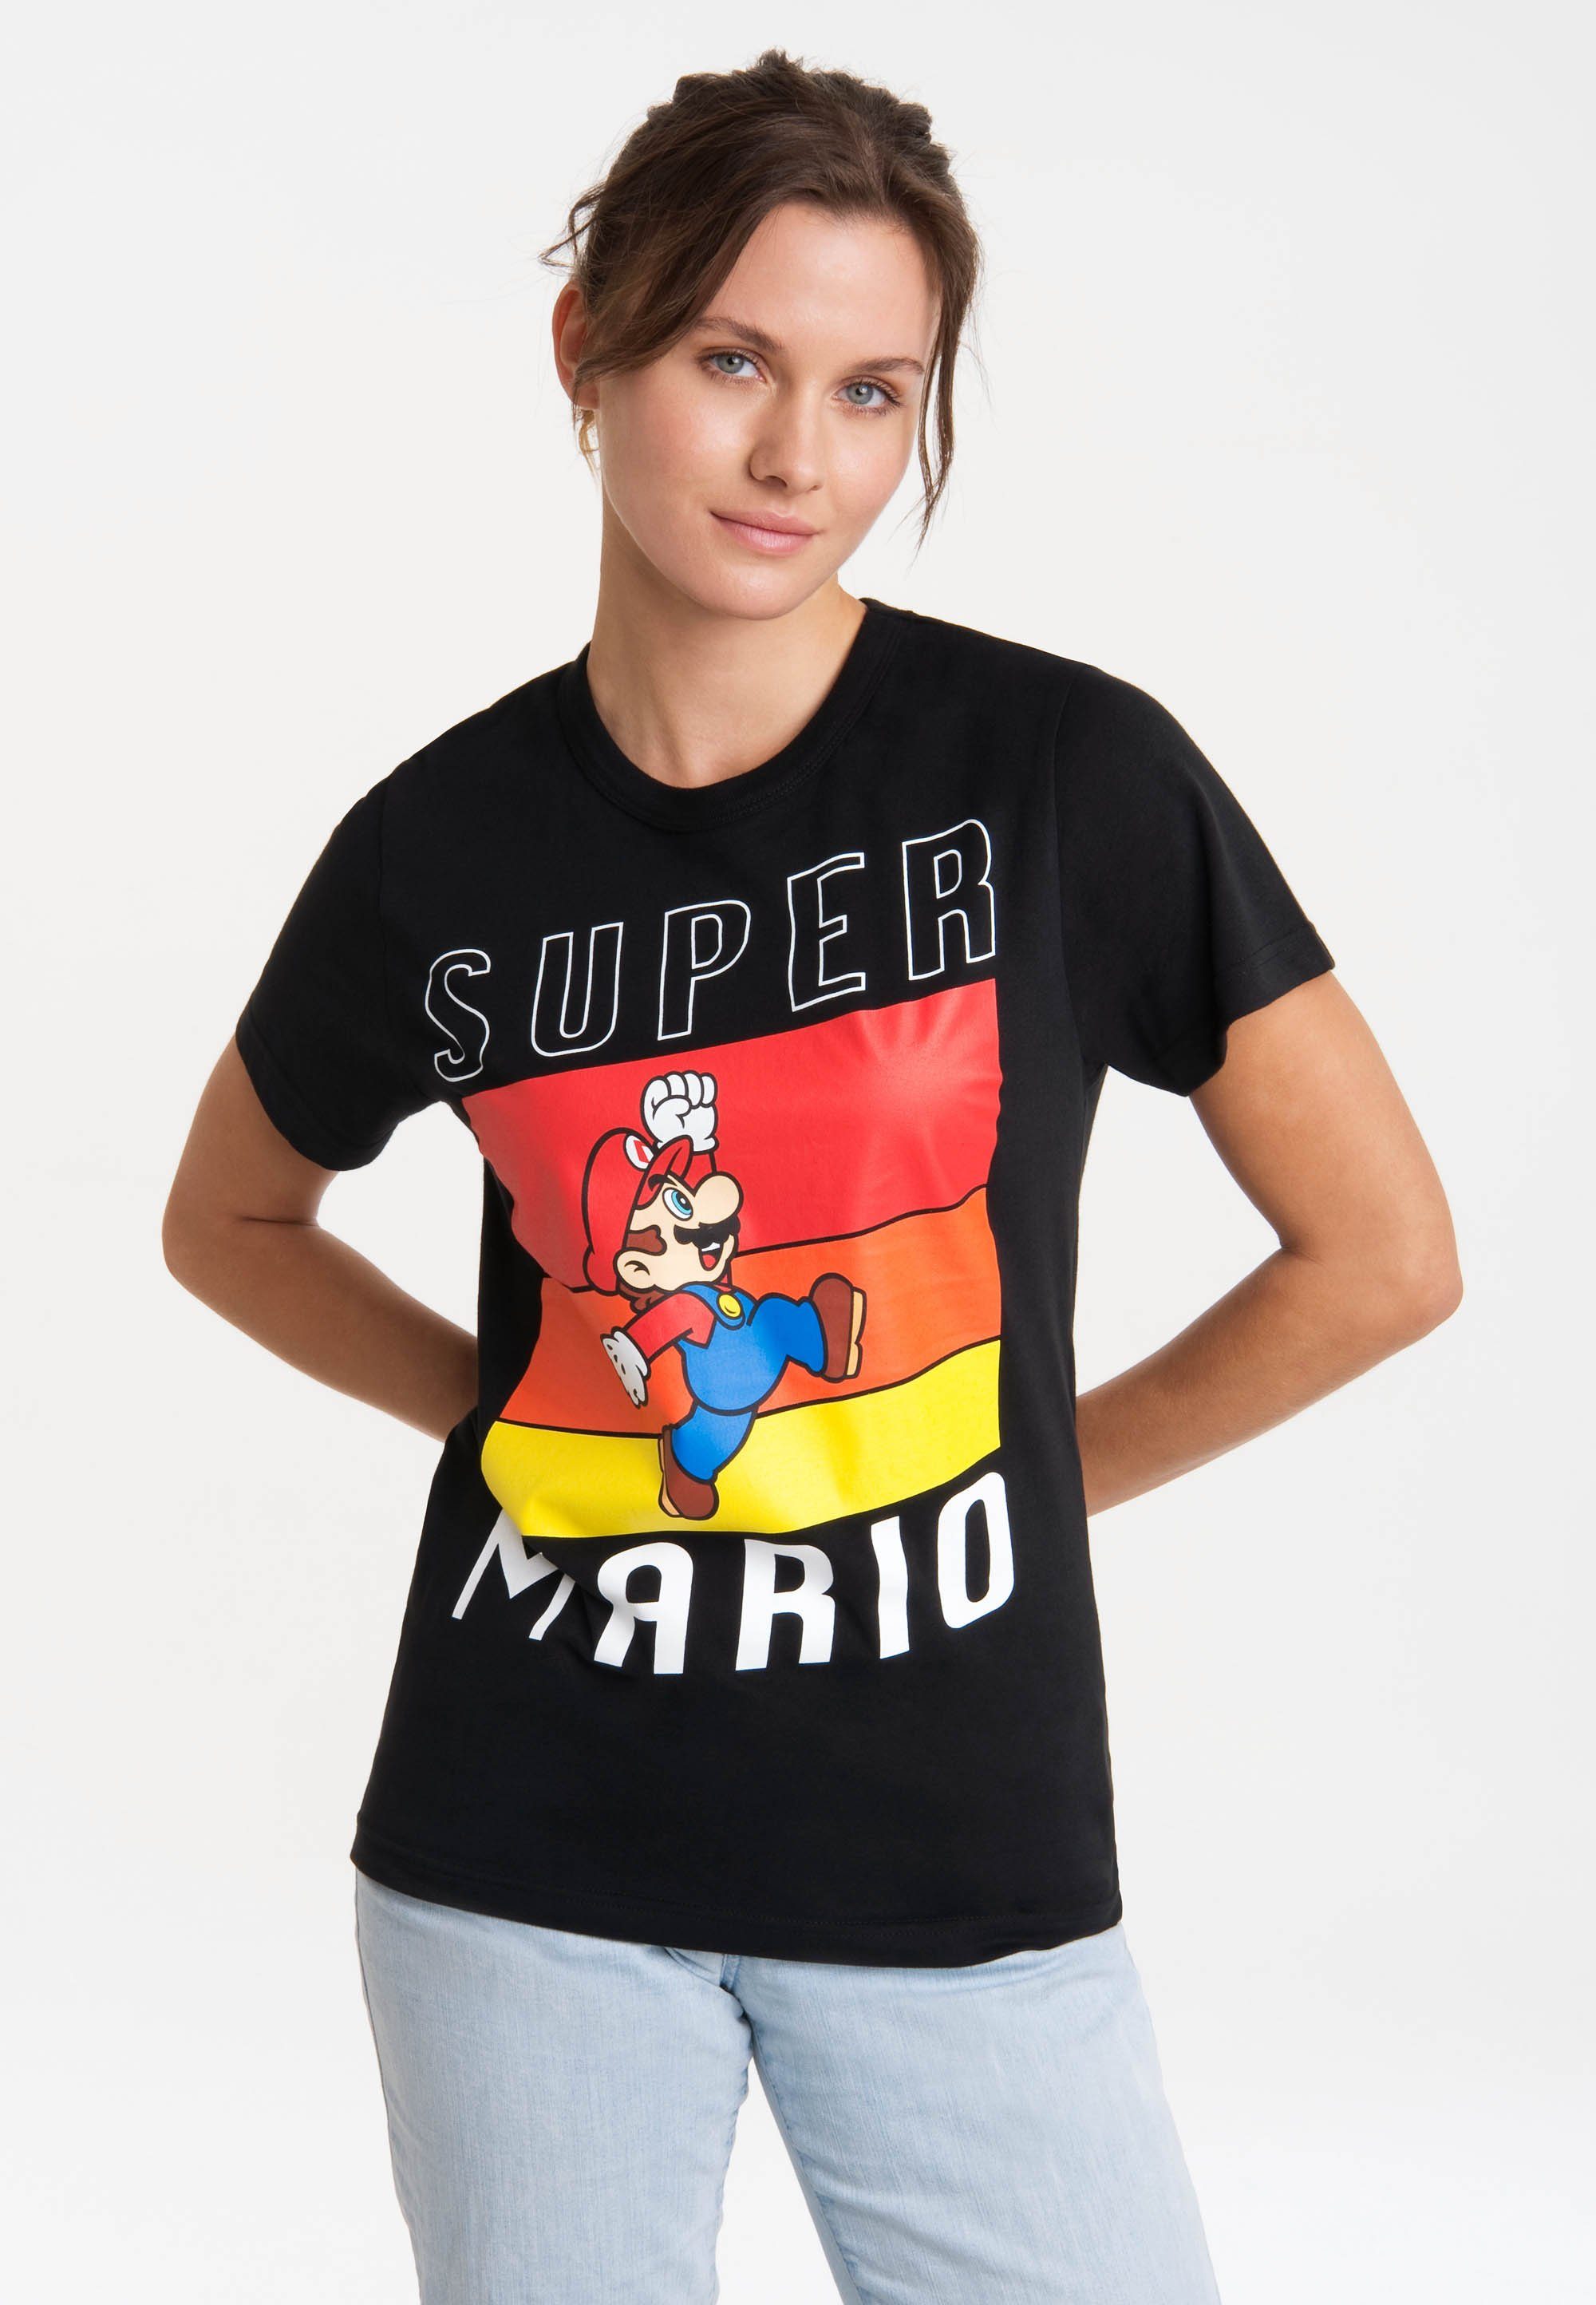 Print mit Super LOGOSHIRT T-Shirt lizenziertem Jump - Mario